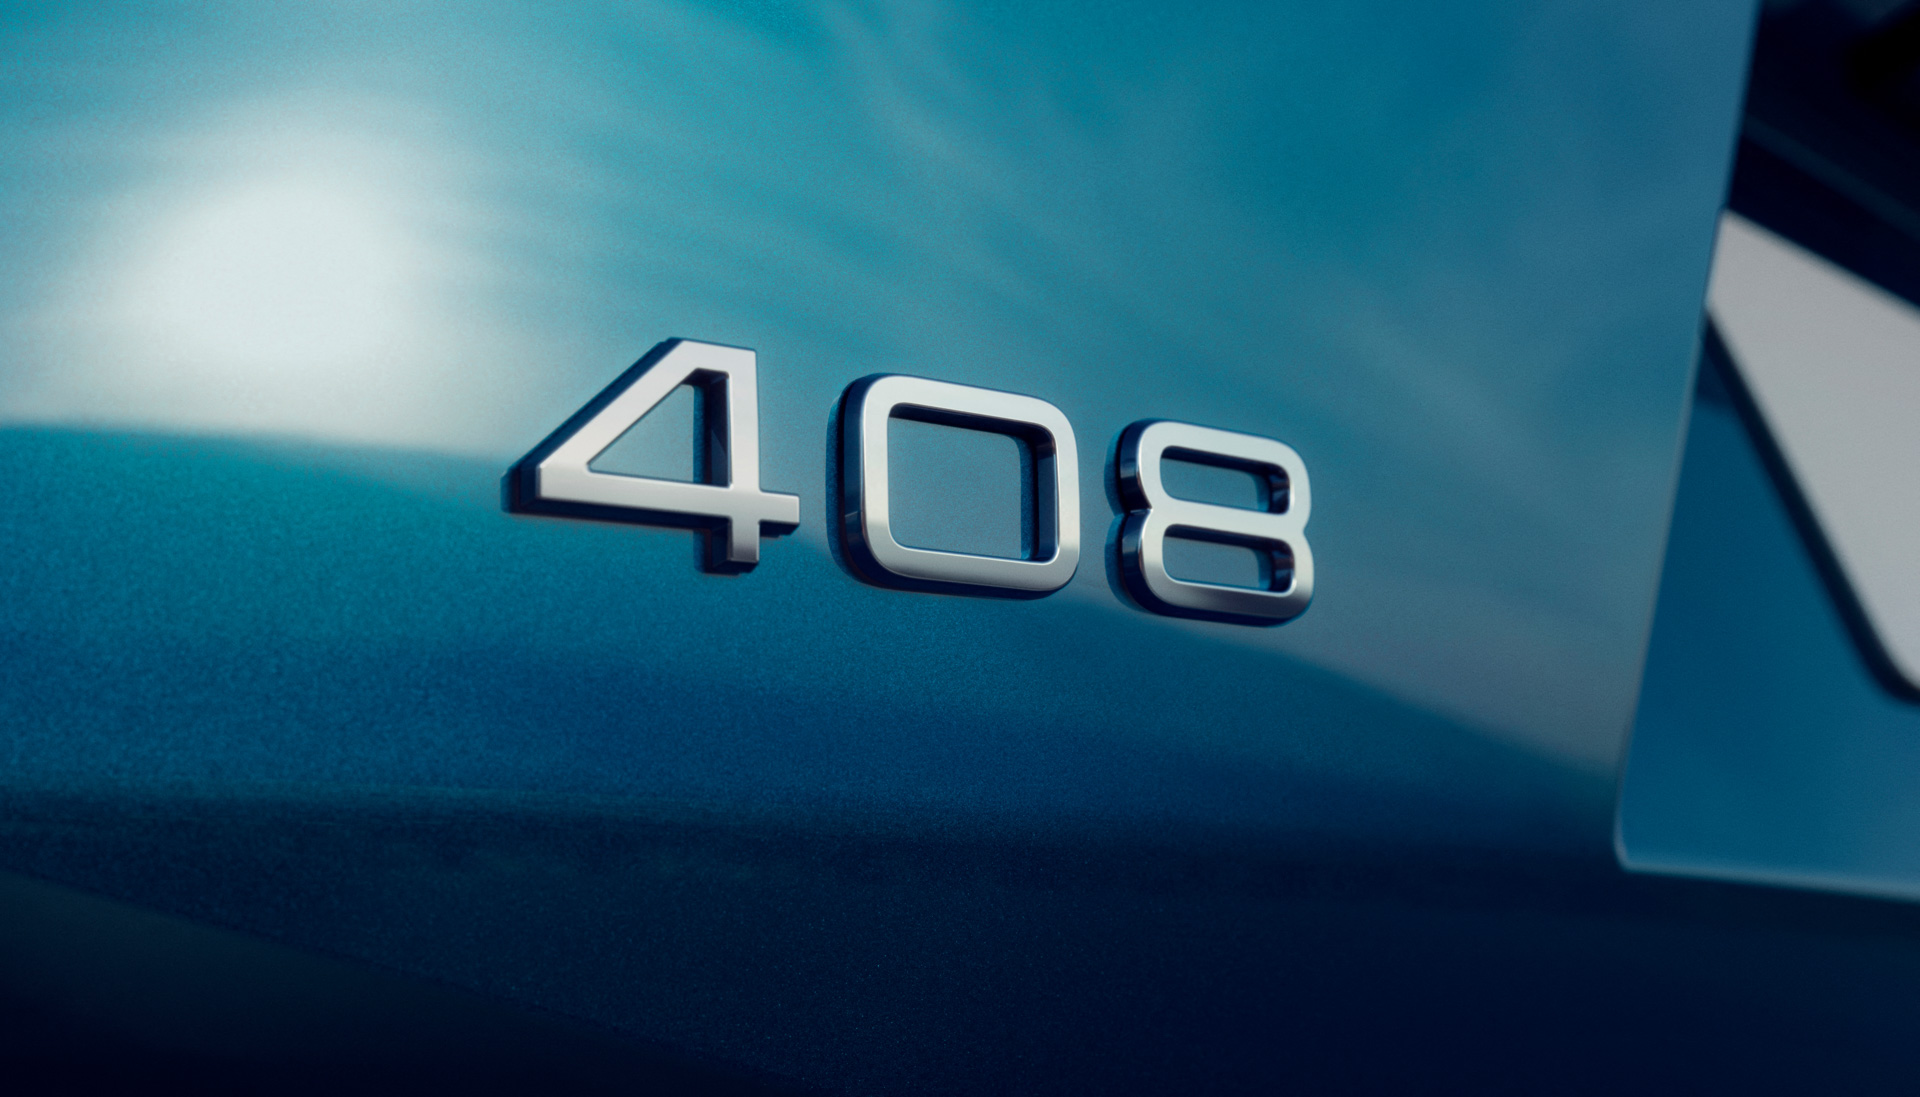 Yeni 2023 Peugeot 408 tanıtıldı: İşte tasarımı ve özellikleri